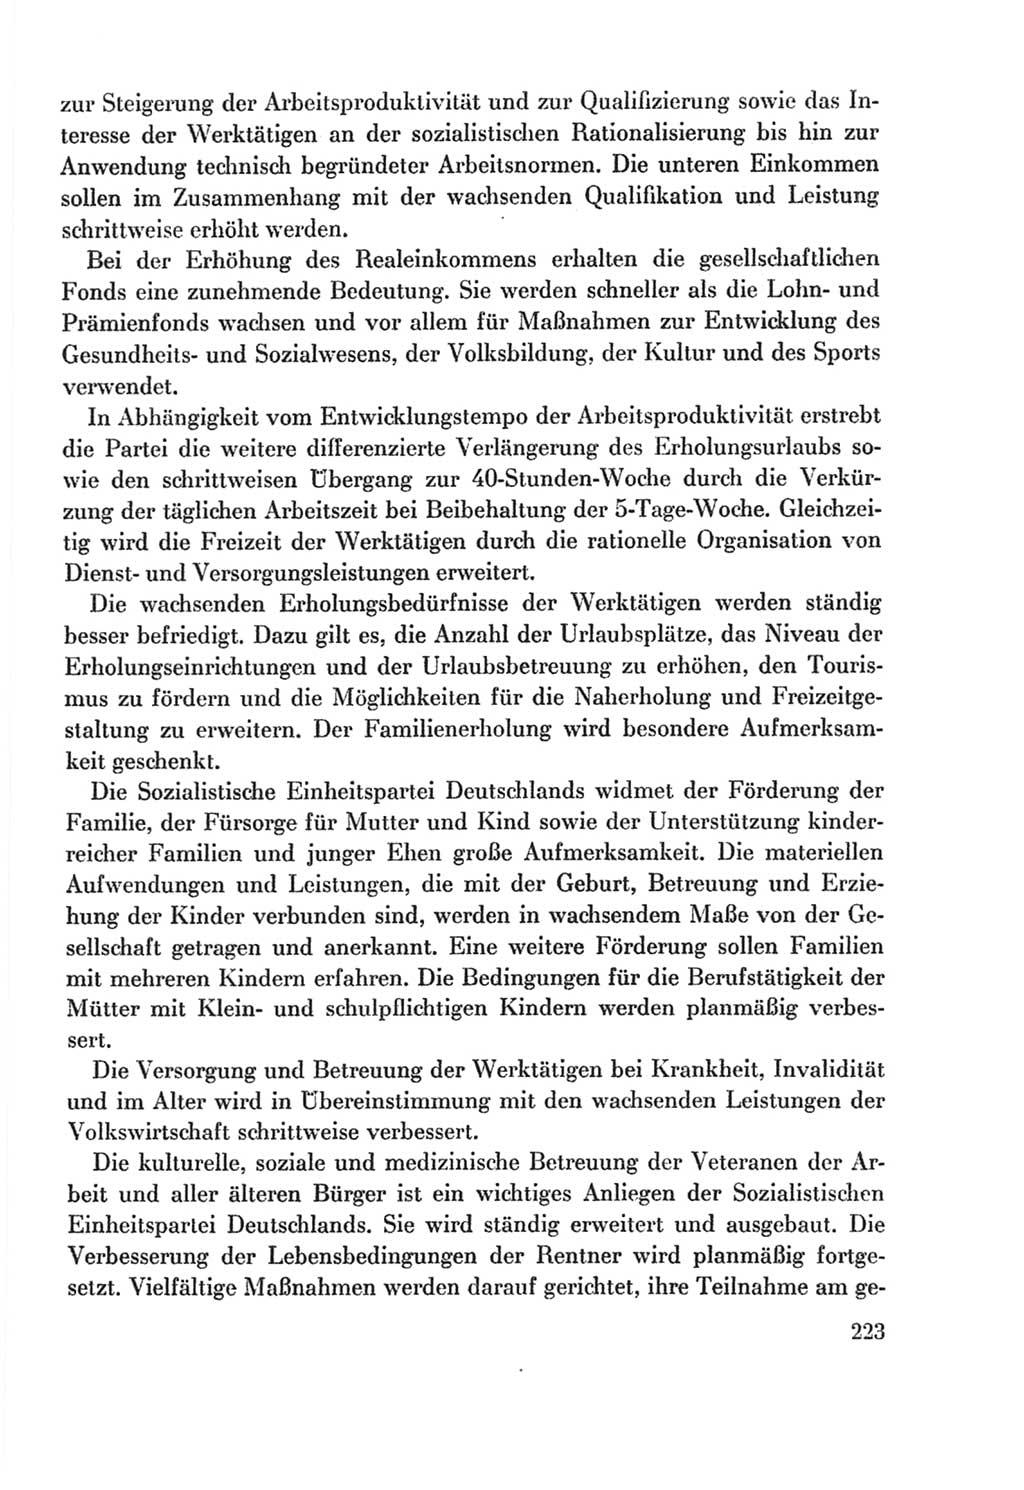 Protokoll der Verhandlungen des Ⅸ. Parteitages der Sozialistischen Einheitspartei Deutschlands (SED) [Deutsche Demokratische Republik (DDR)] 1976, Band 2, Seite 223 (Prot. Verh. Ⅸ. PT SED DDR 1976, Bd. 2, S. 223)